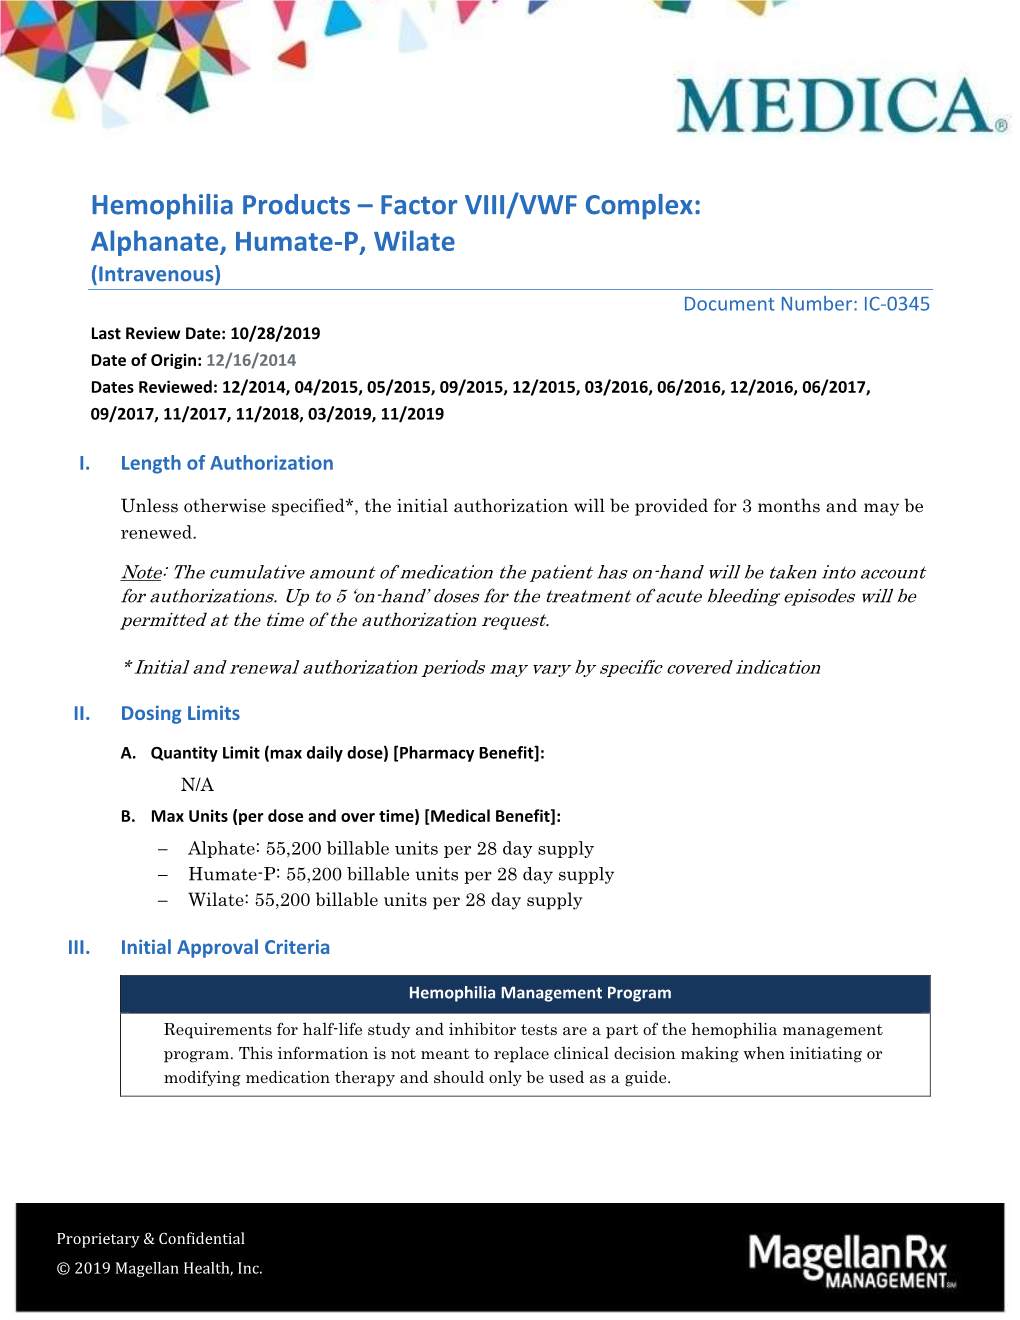 Factor VIII/VWF Complex